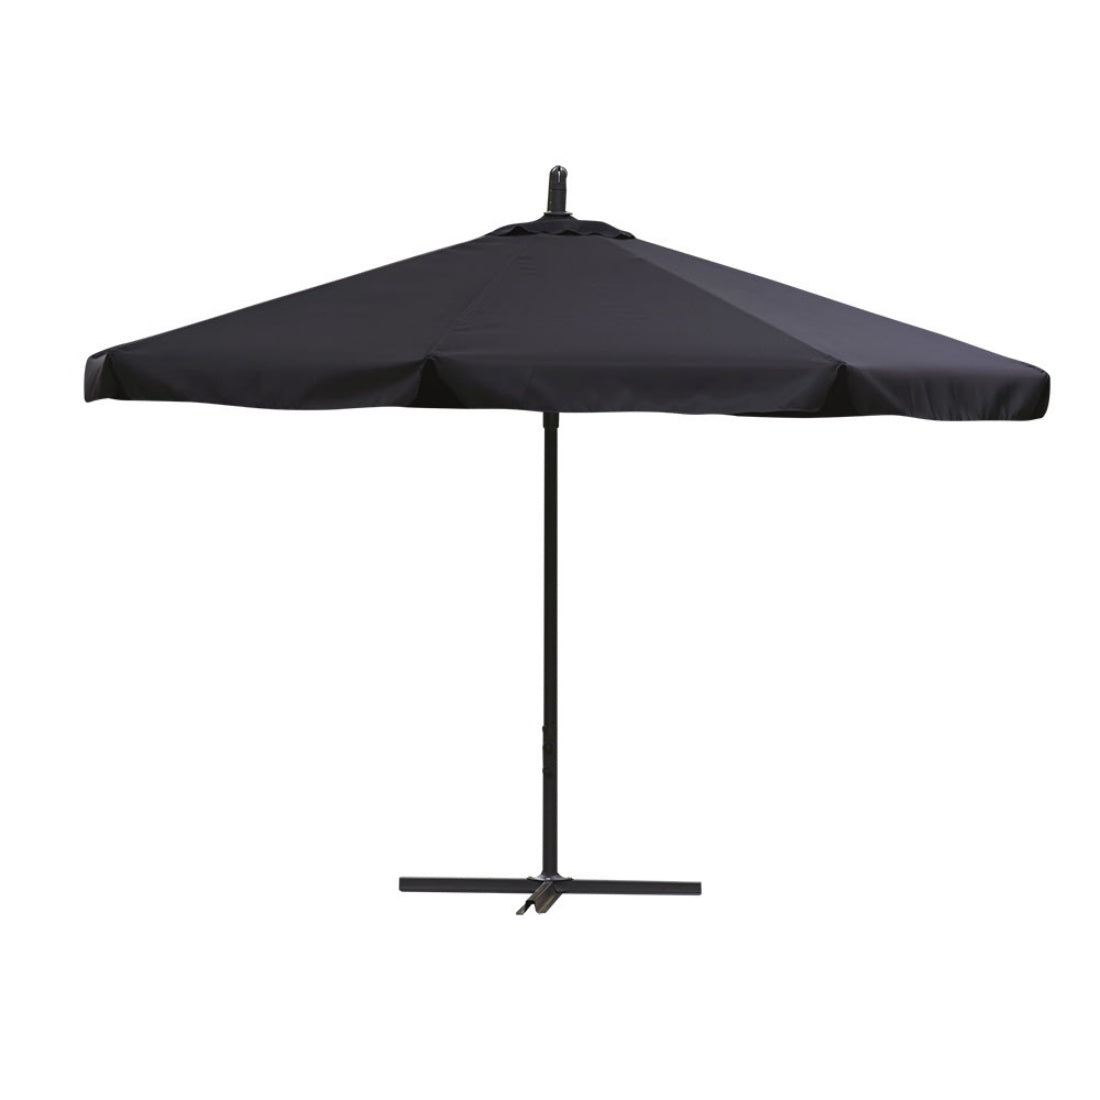 3m Perfect Oasis Blue Garden Umbrella Cantilever Outdoor Shade